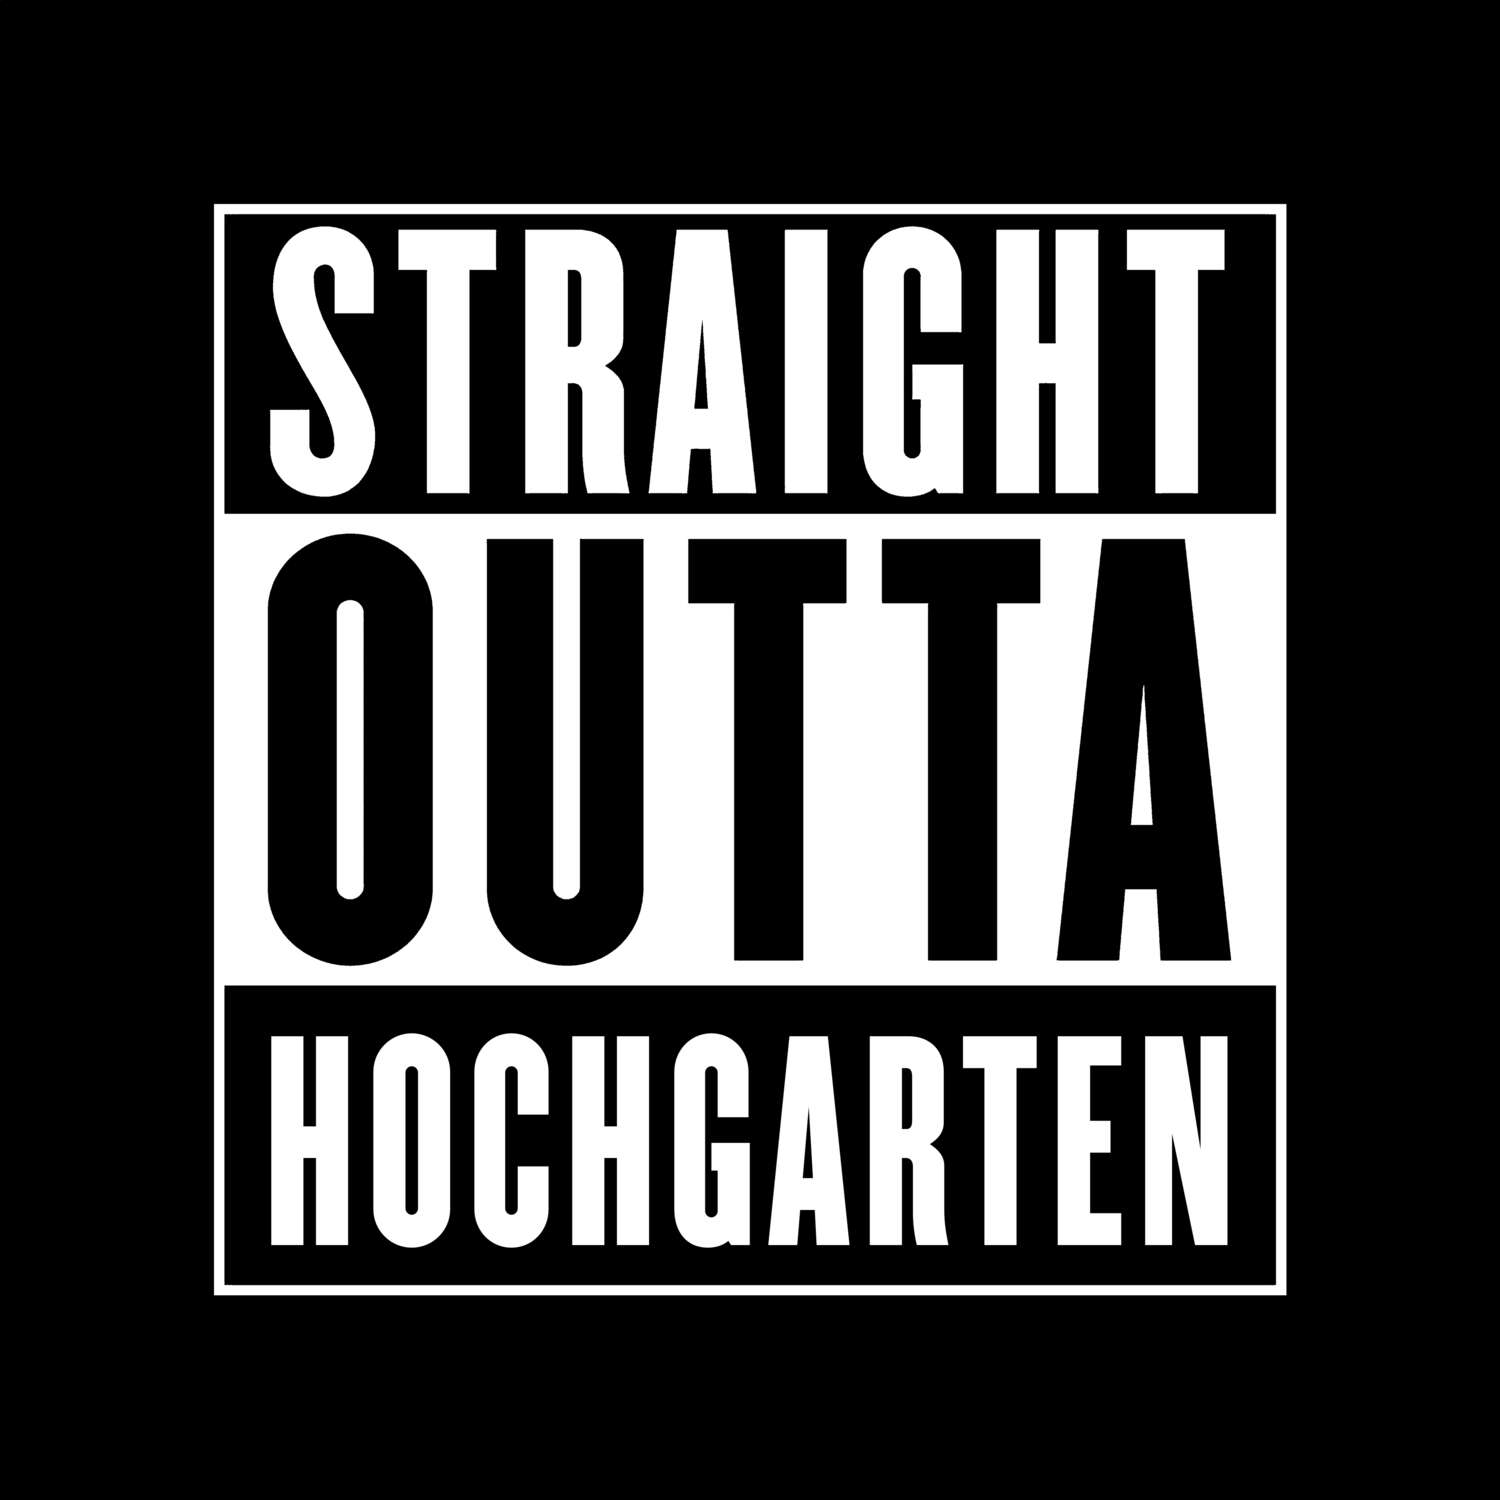 Hochgarten T-Shirt »Straight Outta«